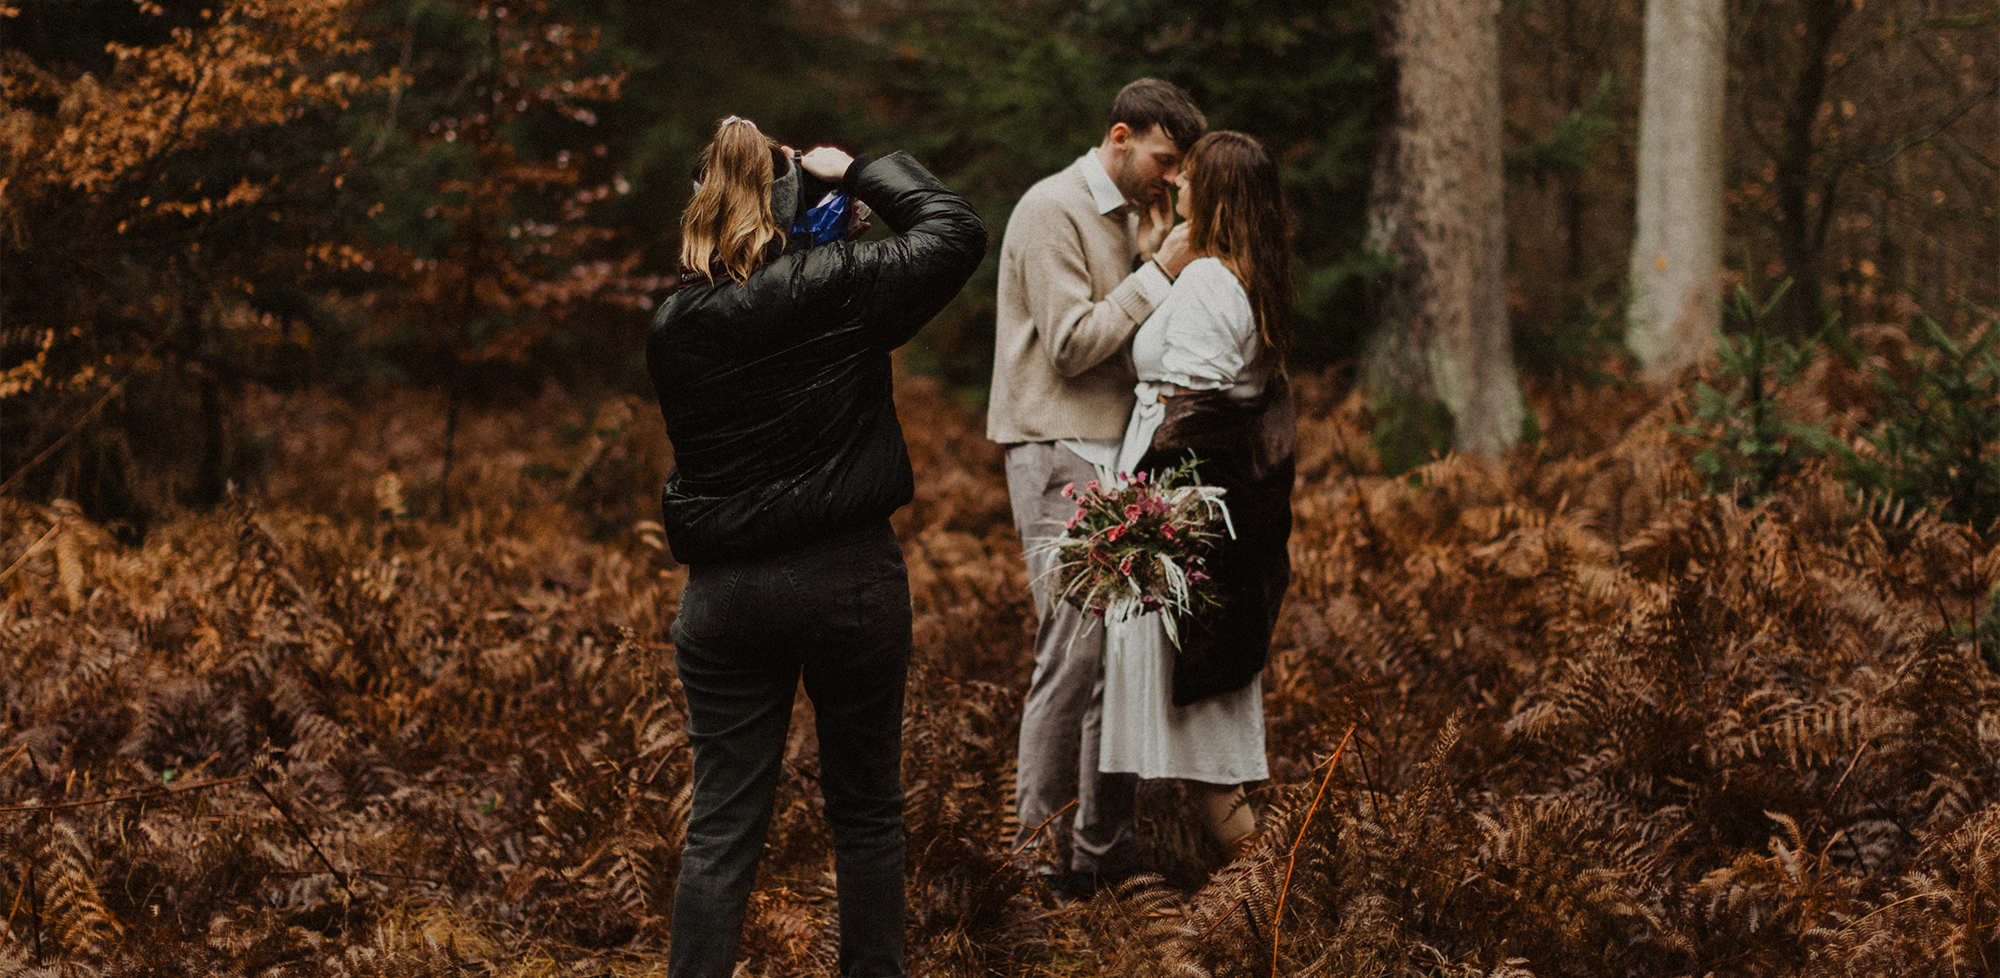 Ein Fotografie Coaching im Wald mit einem Hochzeitspaar